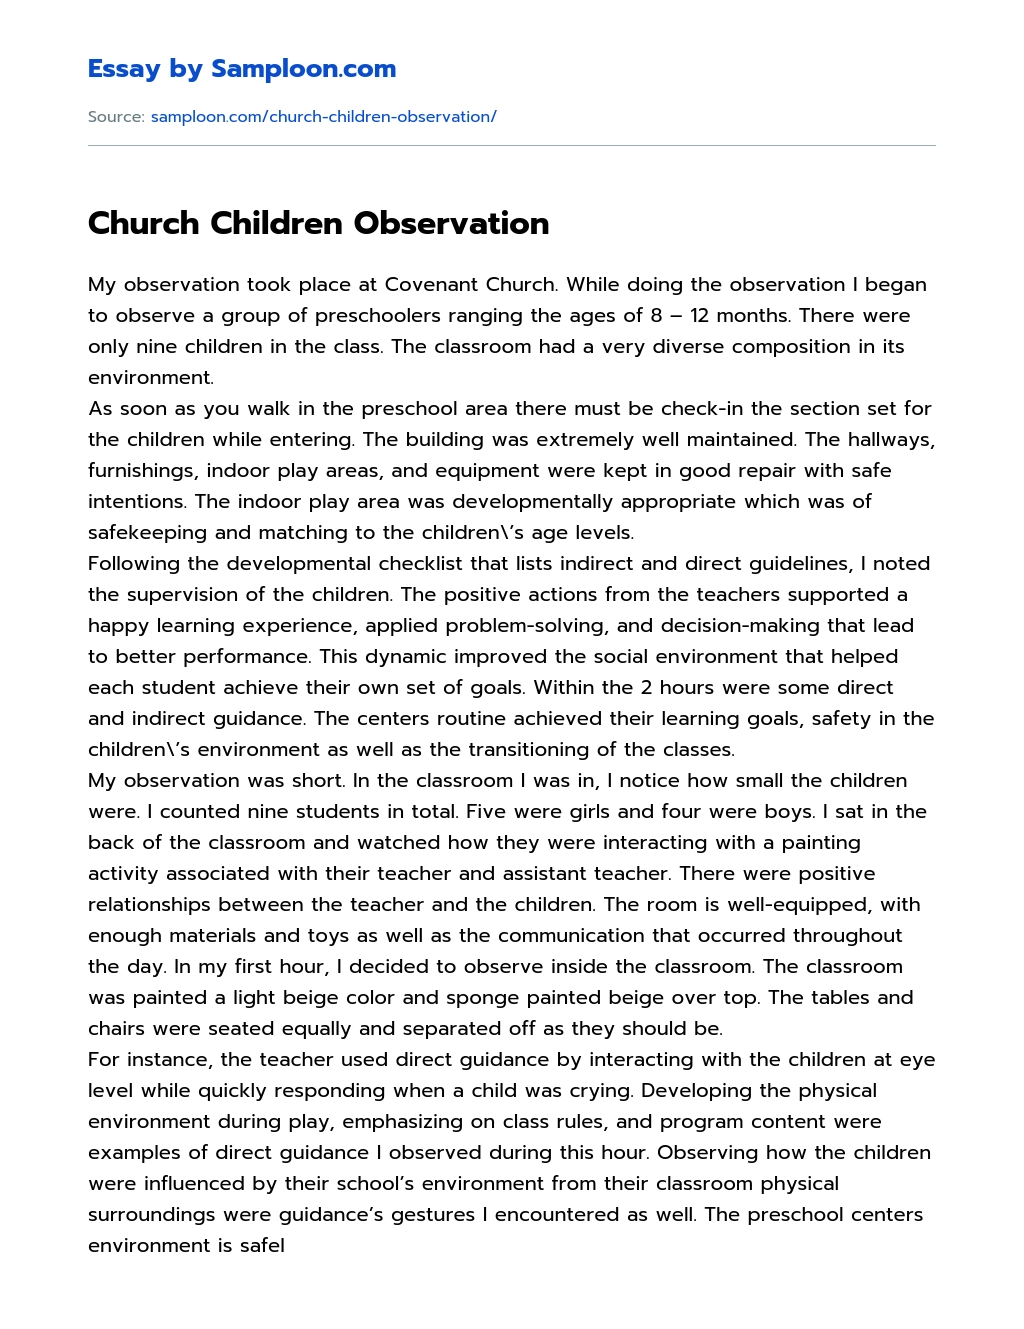 Church Children Observation essay